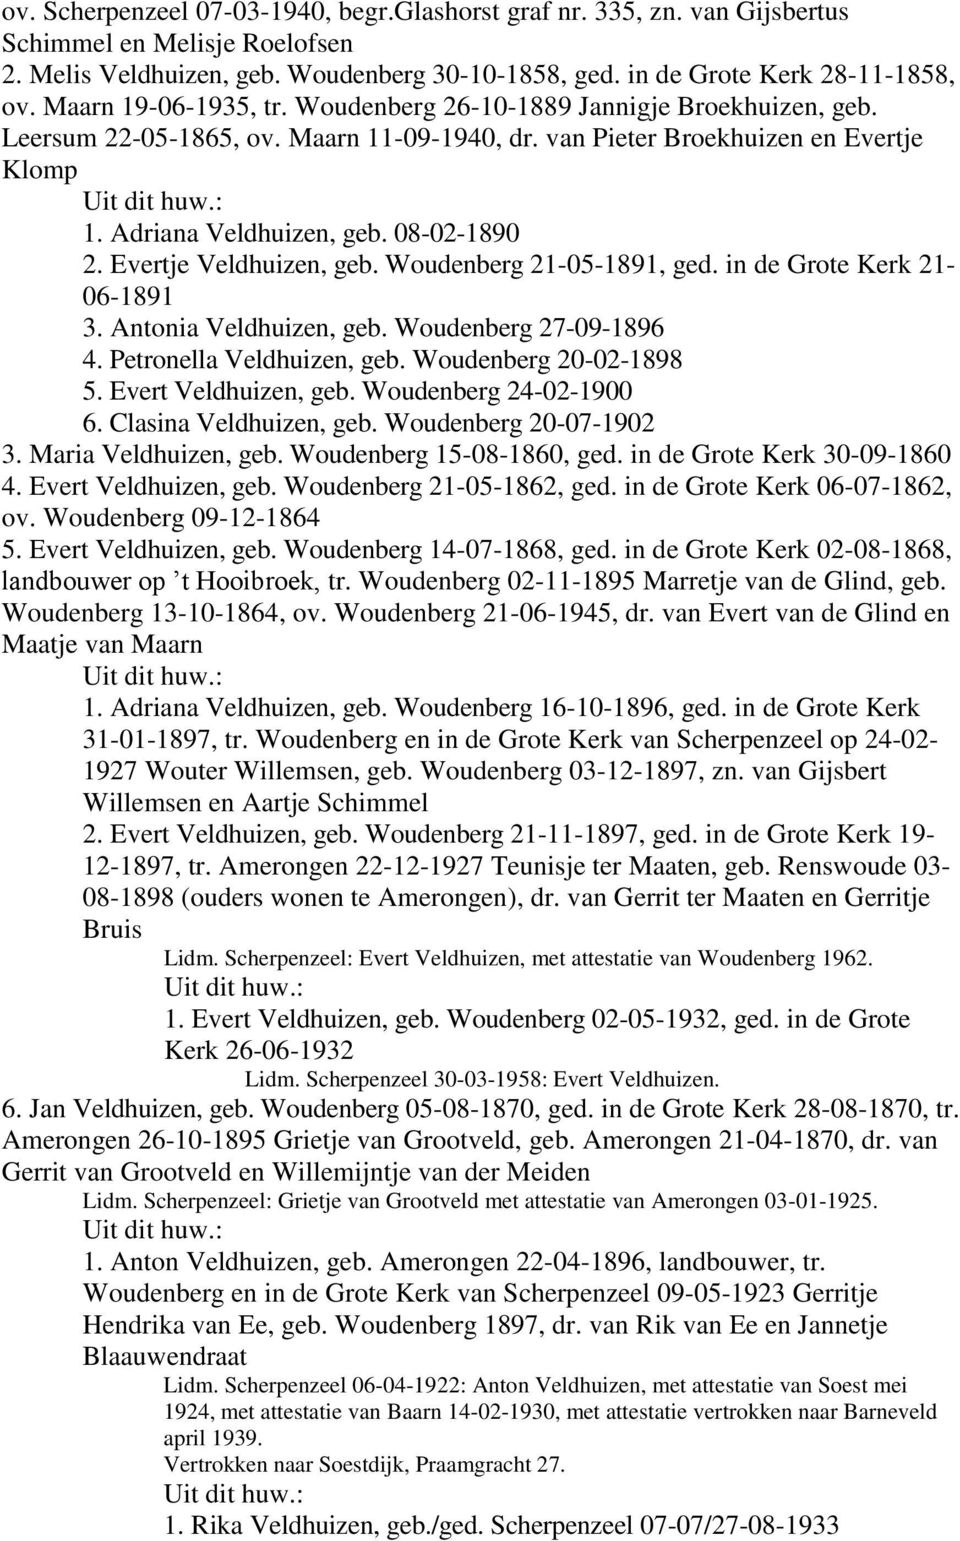 Evertje Veldhuizen, geb. Woudenberg 21-05-1891, ged. in de Grote Kerk 21-06-1891 3. Antonia Veldhuizen, geb. Woudenberg 27-09-1896 4. Petronella Veldhuizen, geb. Woudenberg 20-02-1898 5.